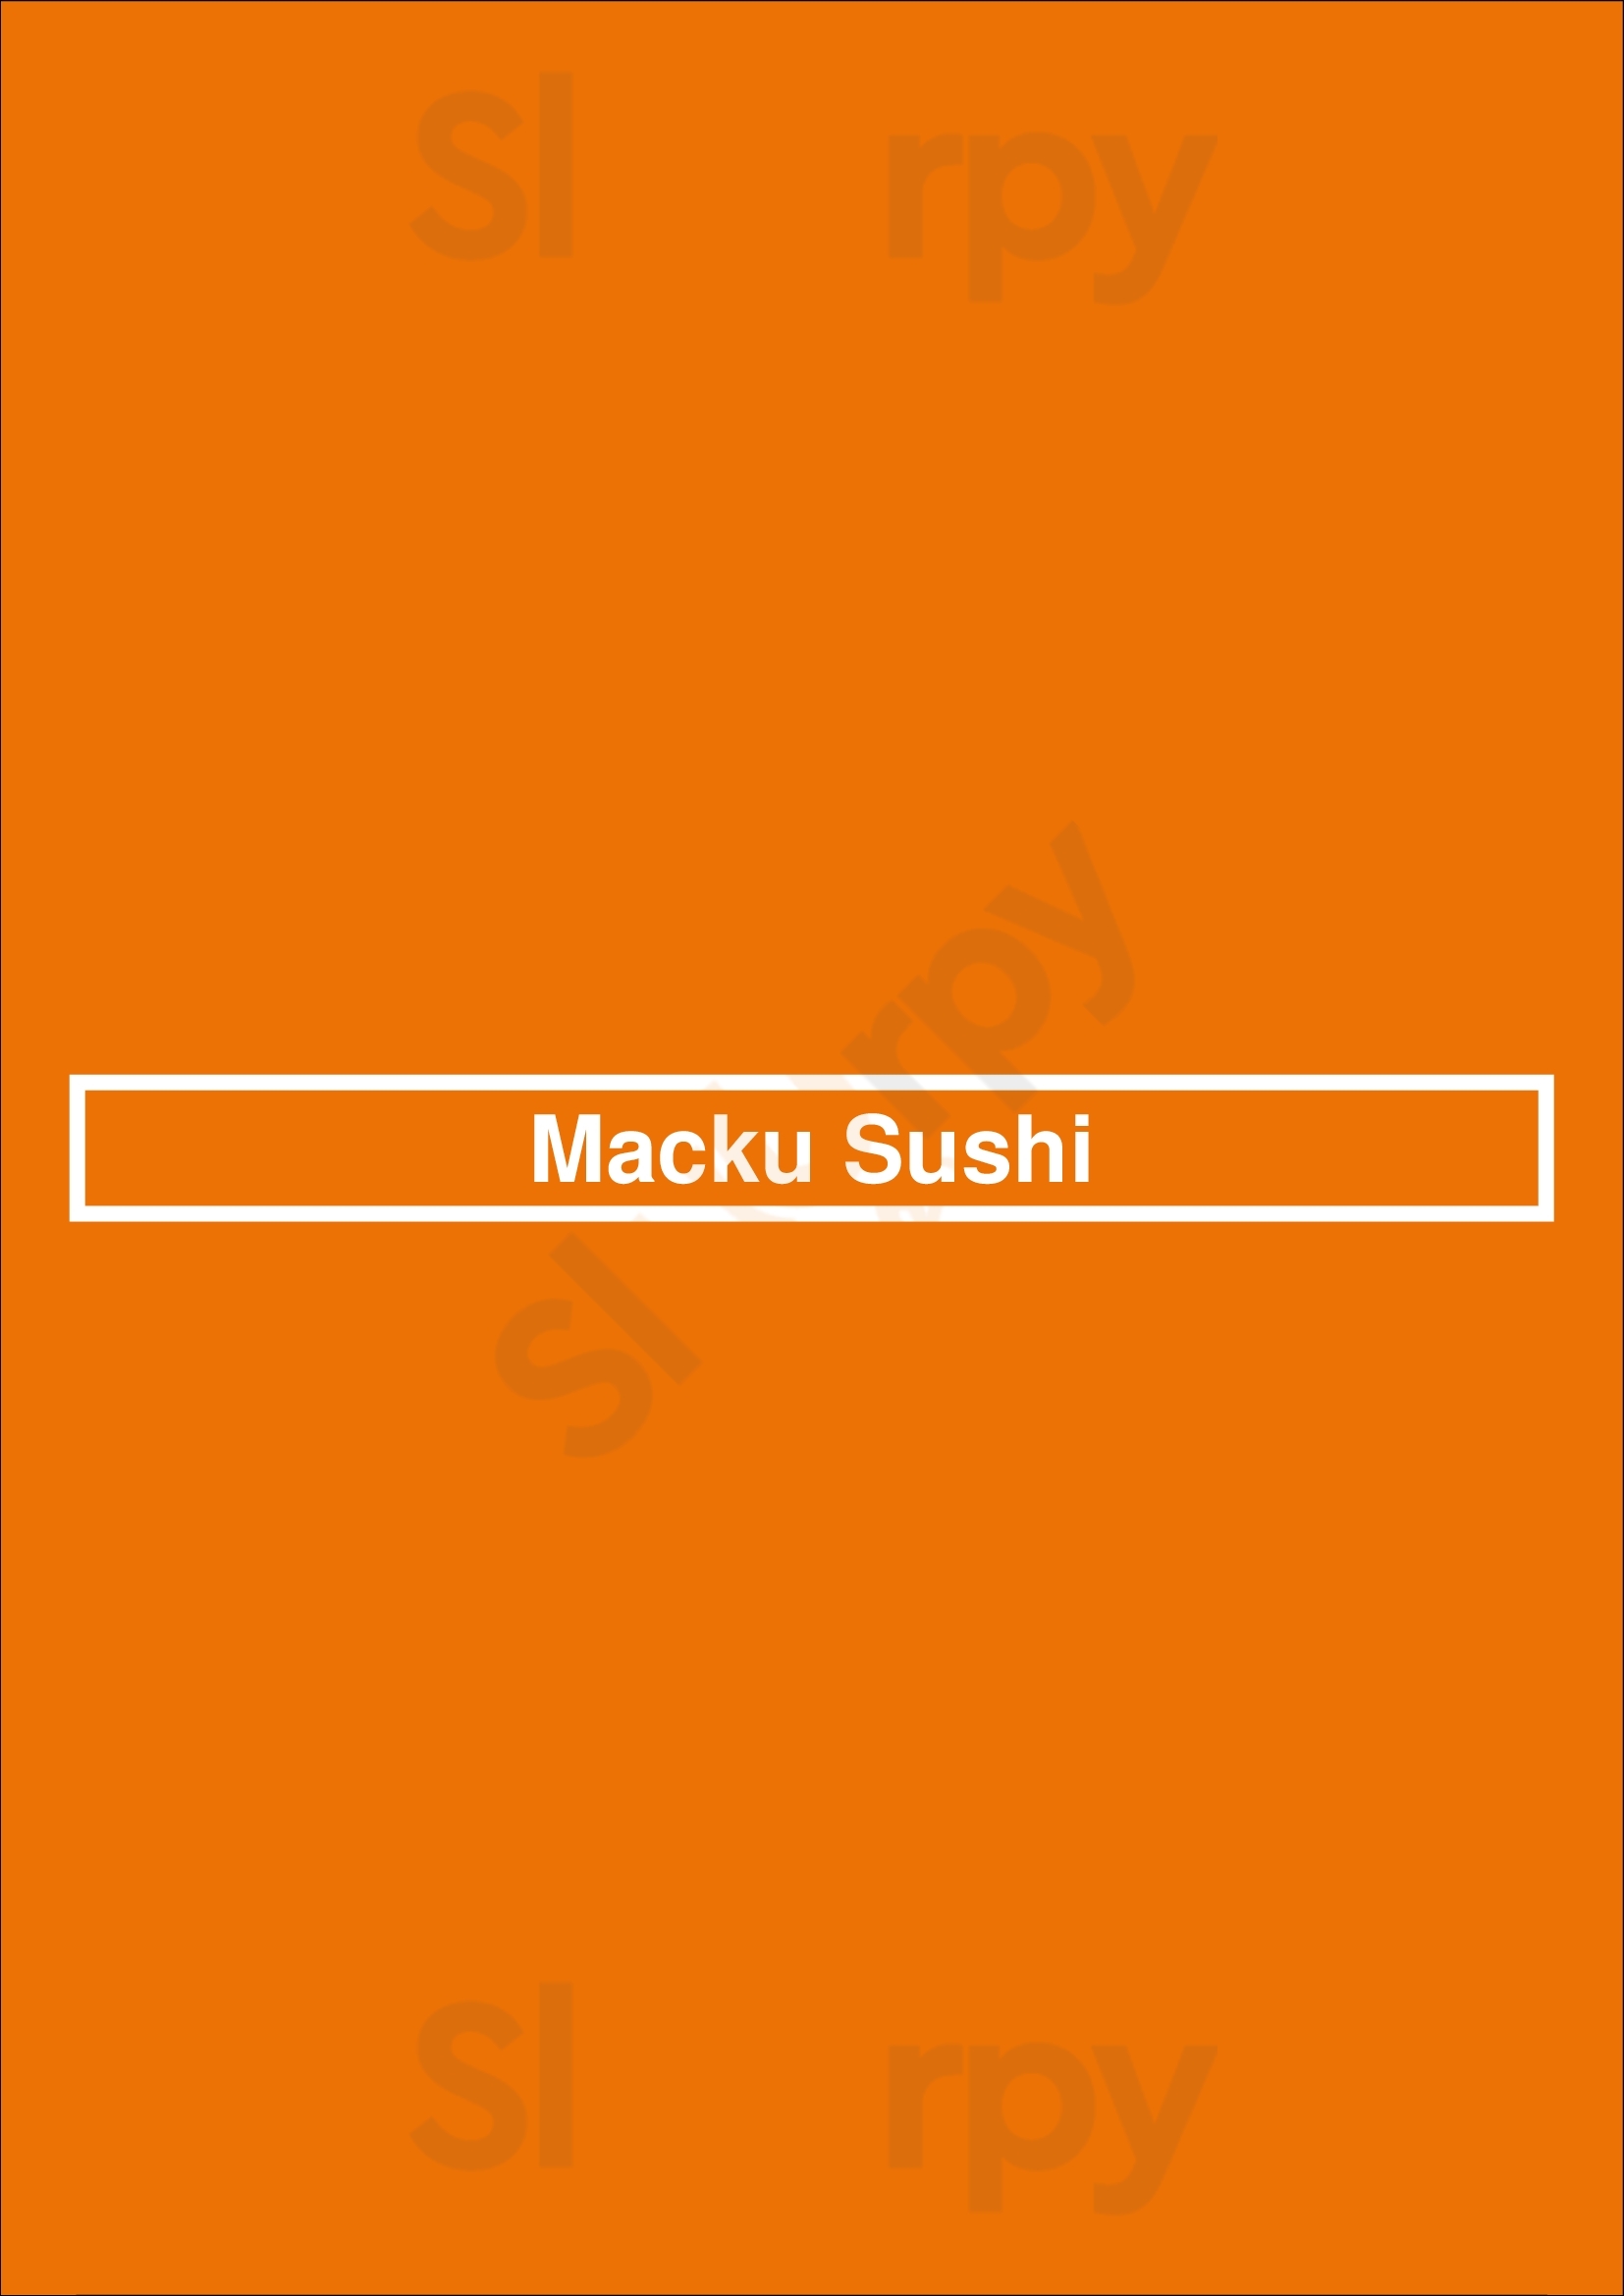 Macku Sushi Chicago Menu - 1